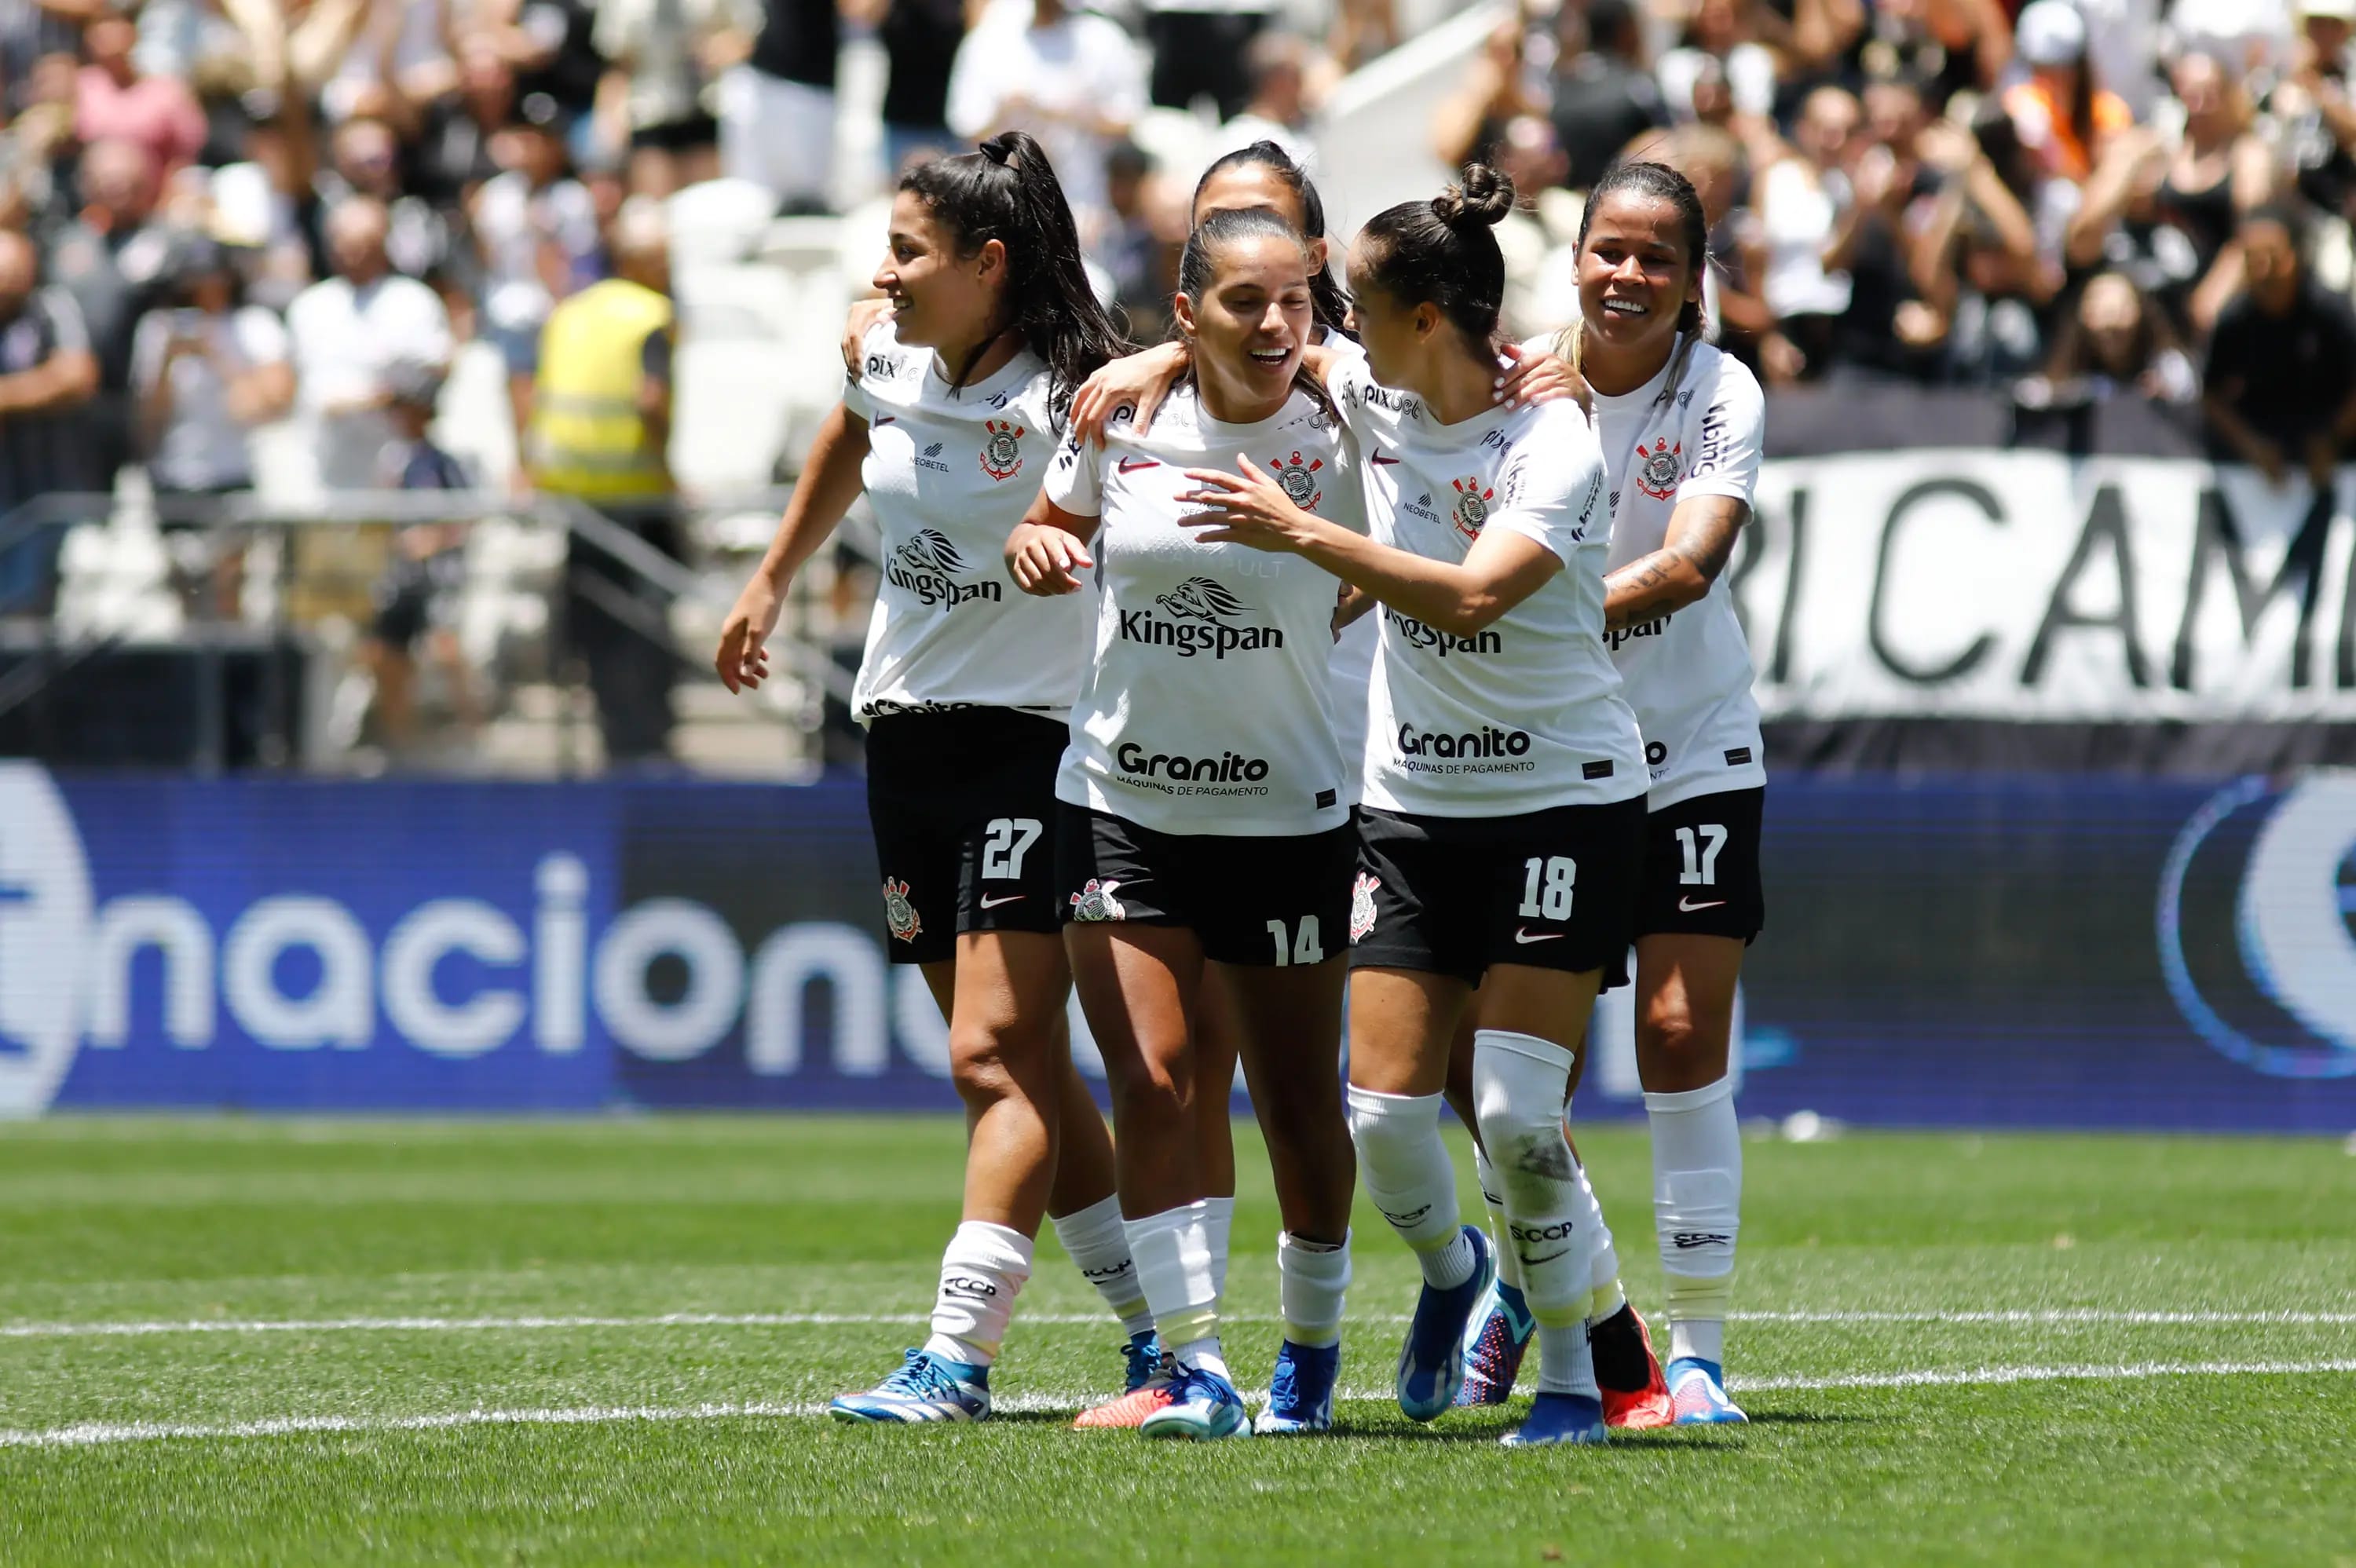 Corinthians goleia o São Paulo e conquista quarto título do Campeonato Paulista  feminino - Gazeta Esportiva